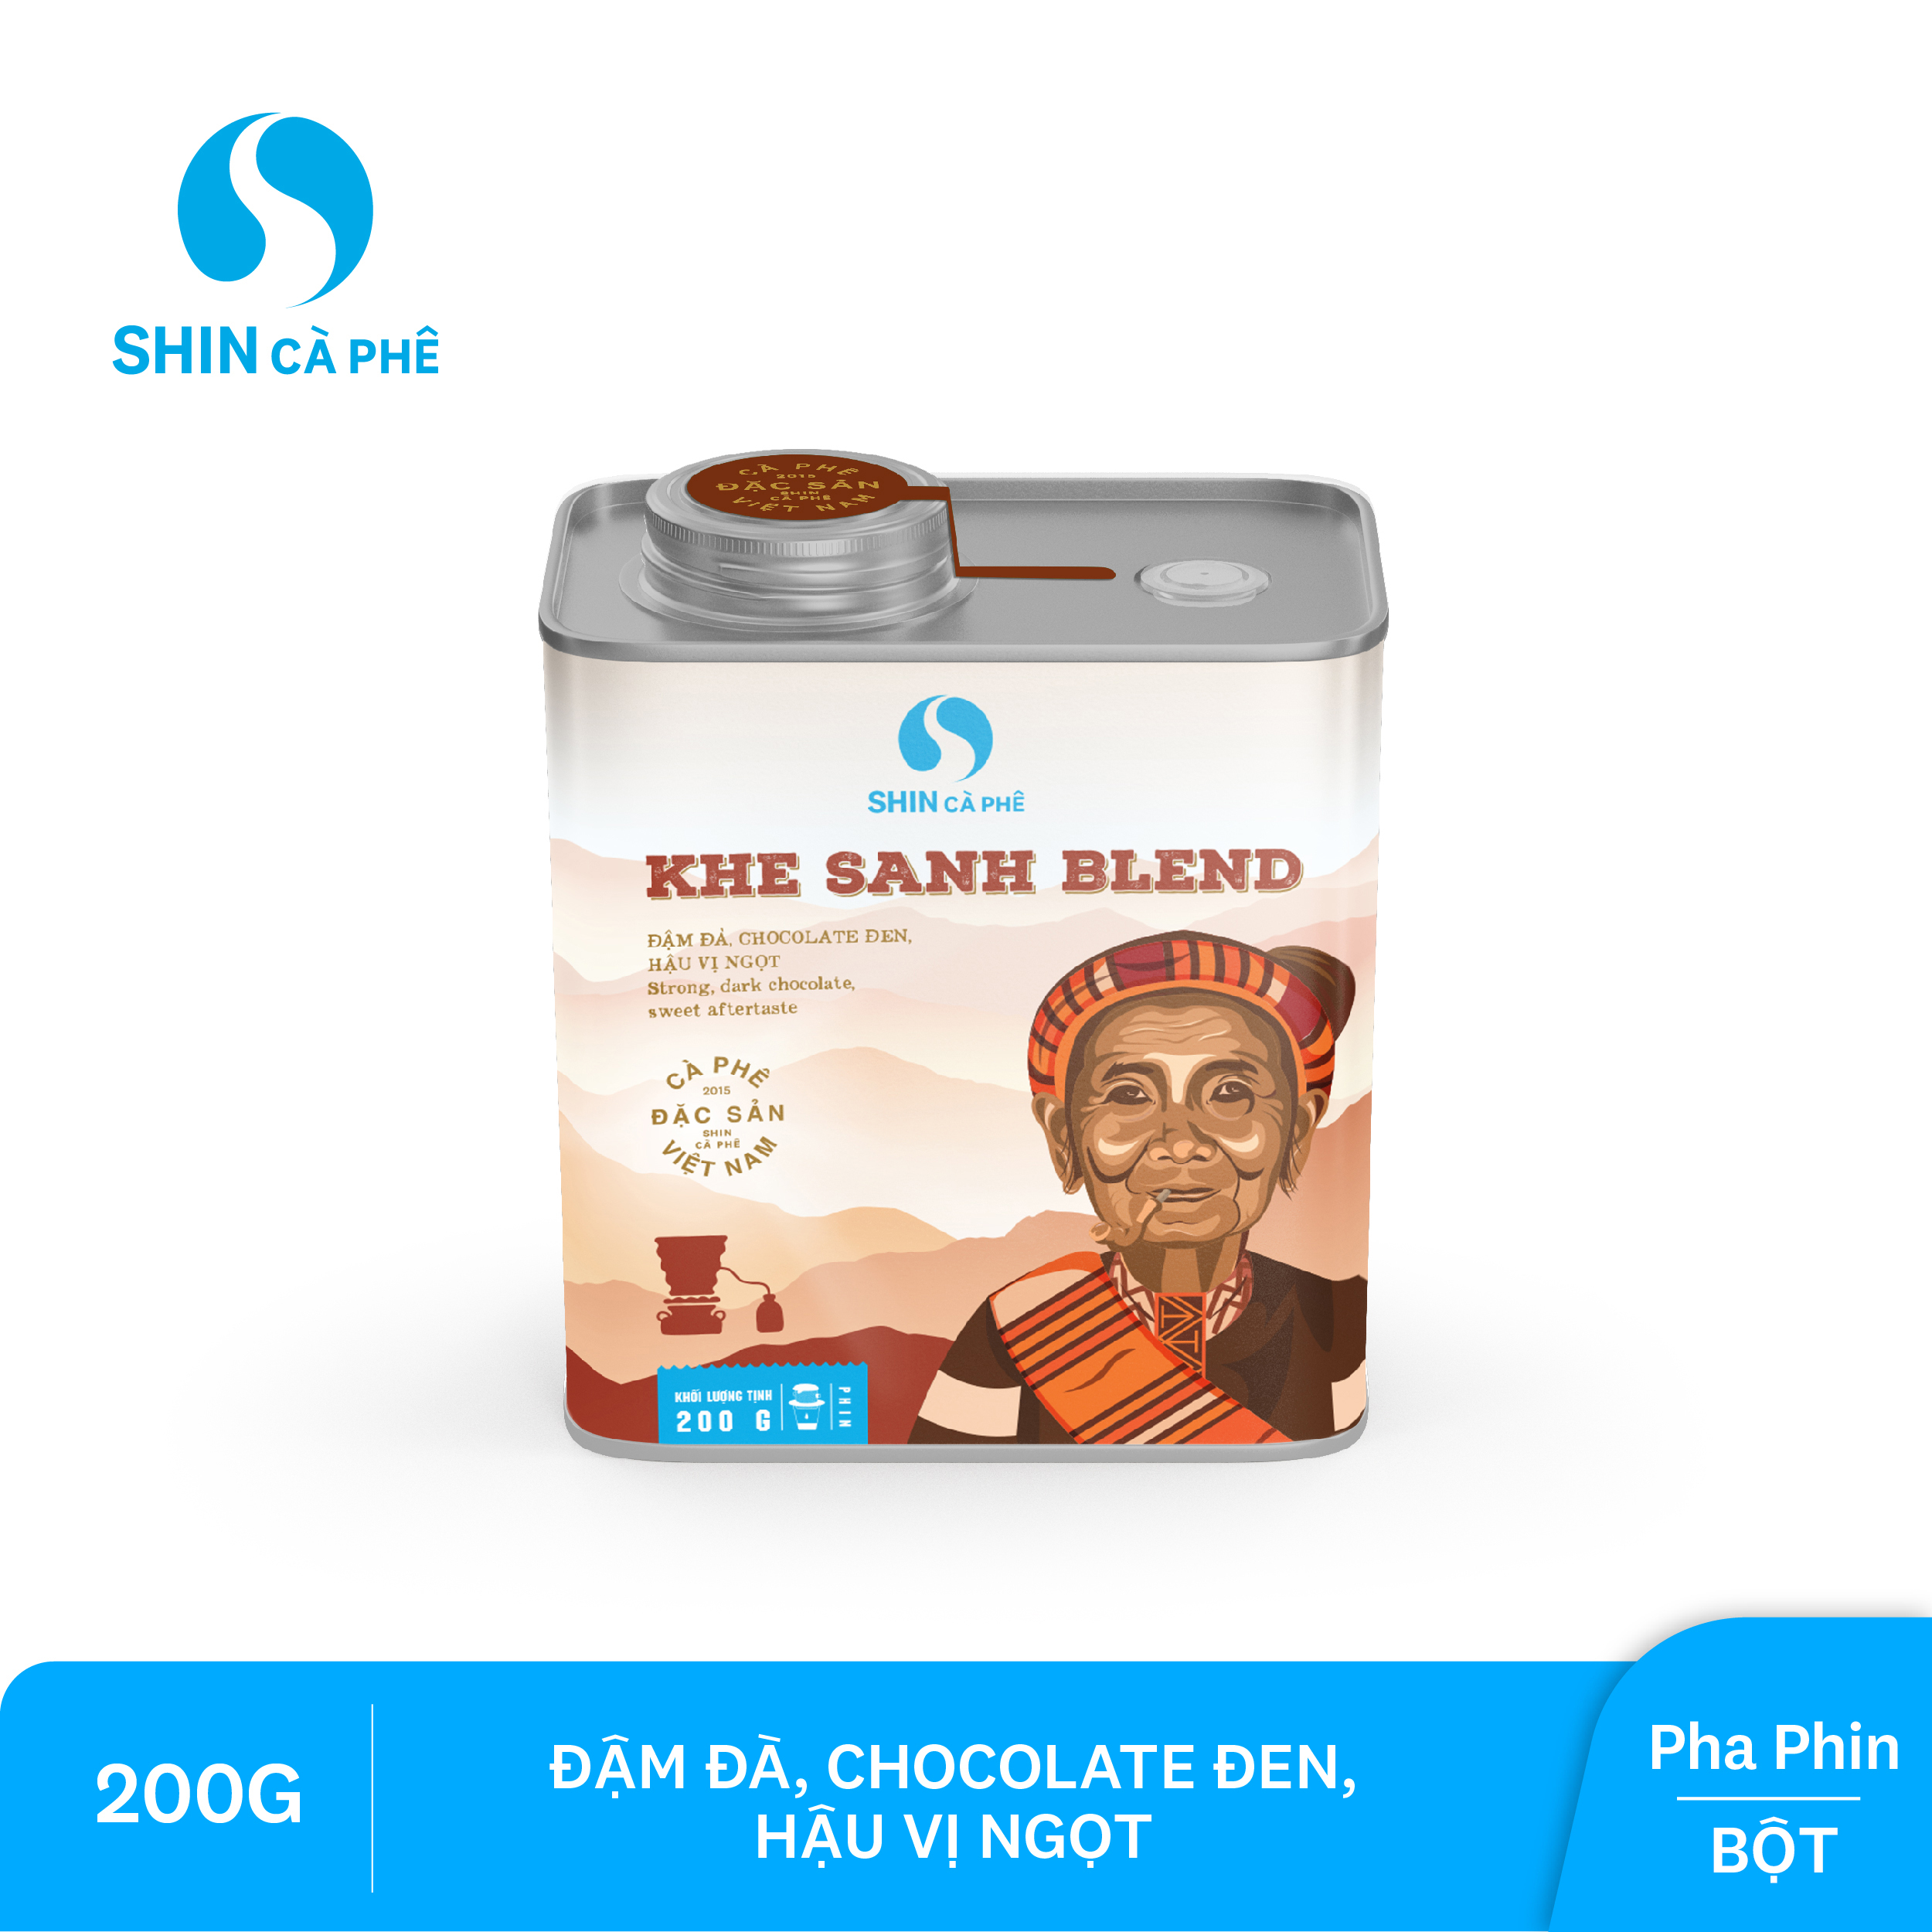 SHIN Cà phê - Cà phê pha phin Khe Sanh Blend - Hộp thiếc 200 gram (Bột)